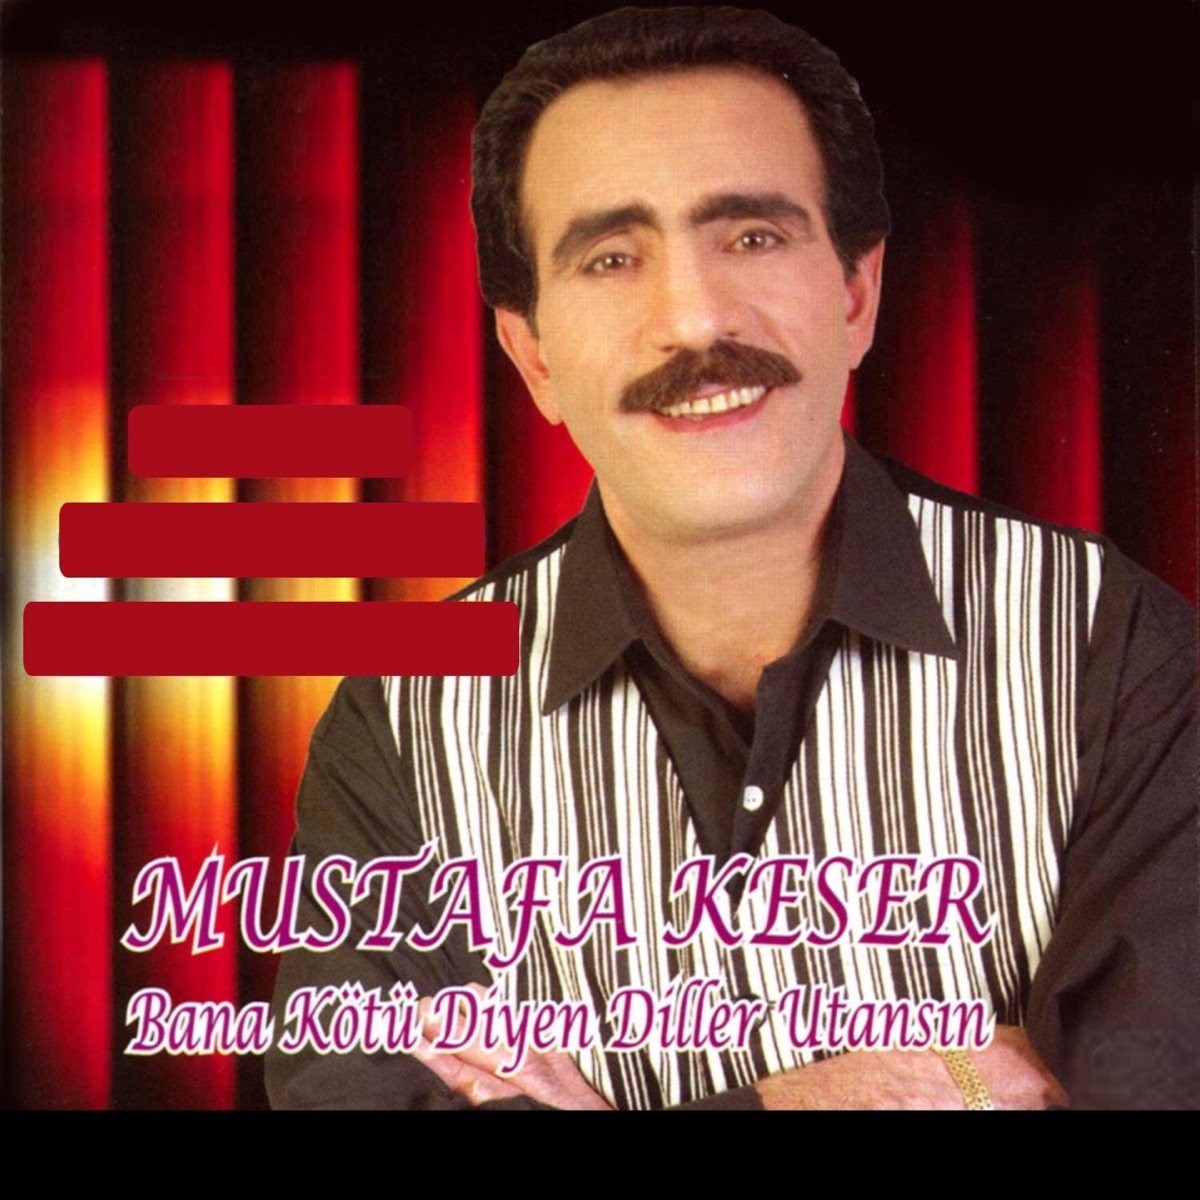 Bana Kötü Diyenler Utansın - Album by Mustafa Keser - Apple Music